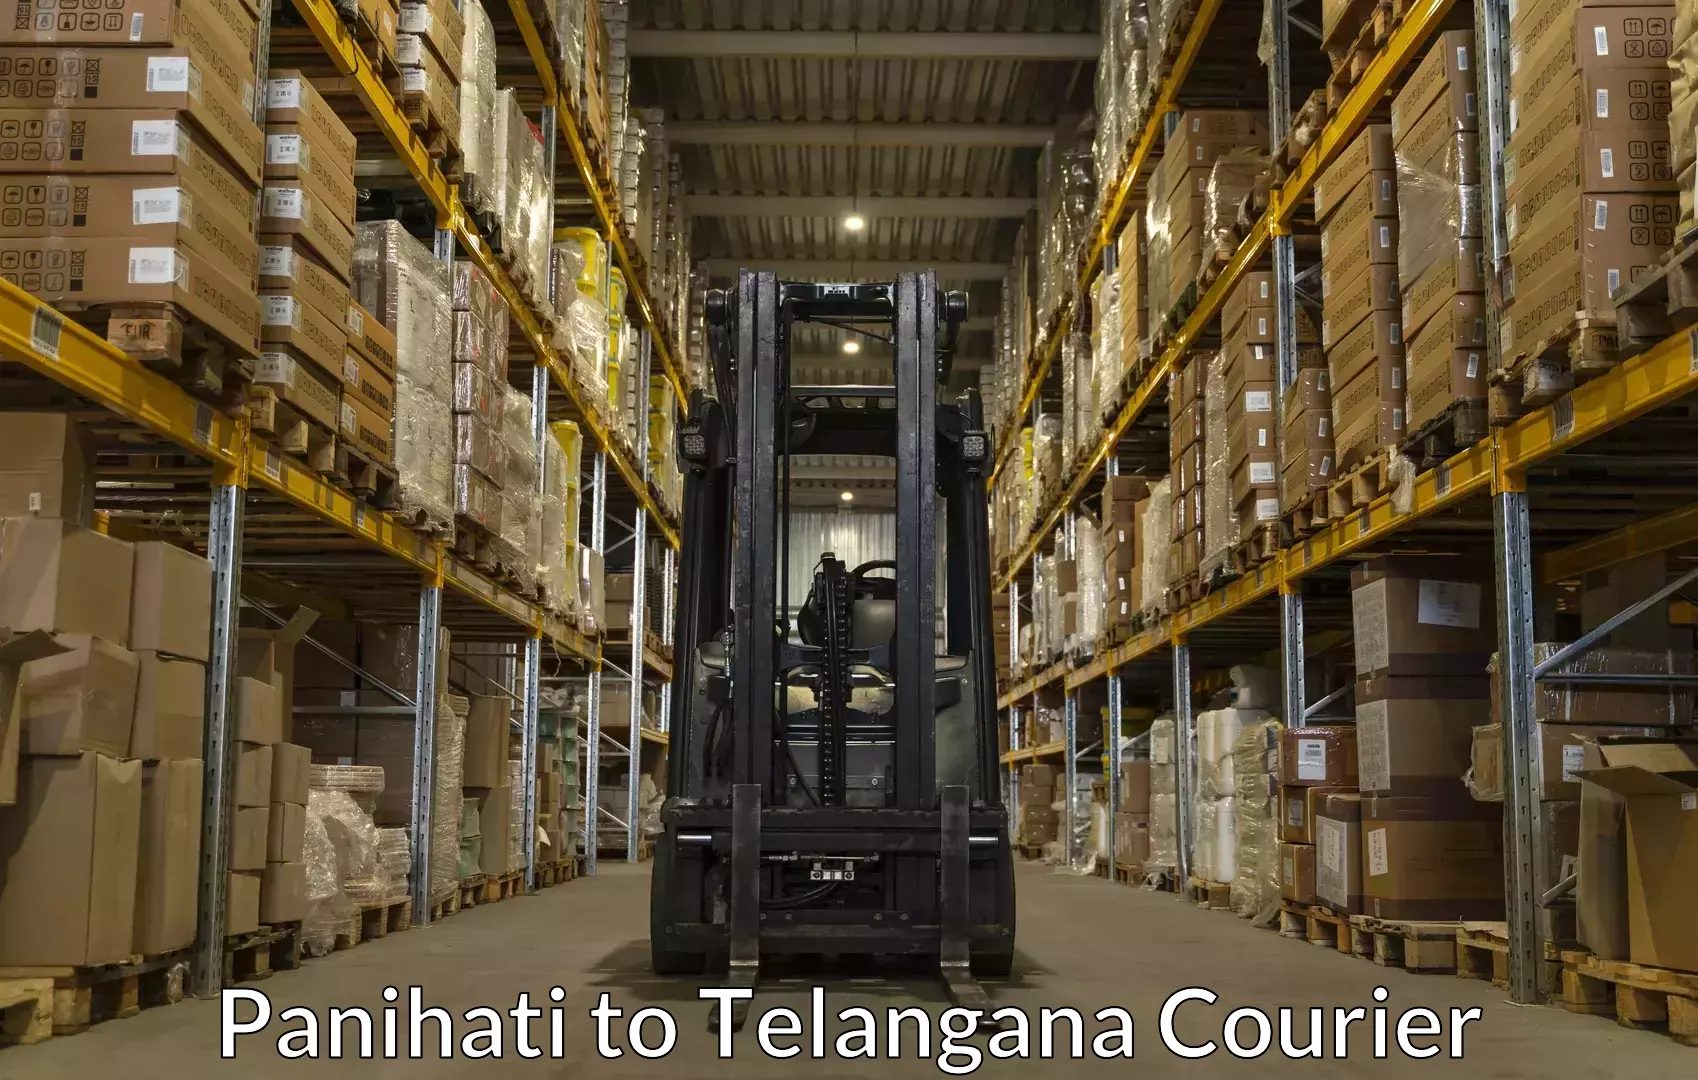 Baggage transport management Panihati to Telangana